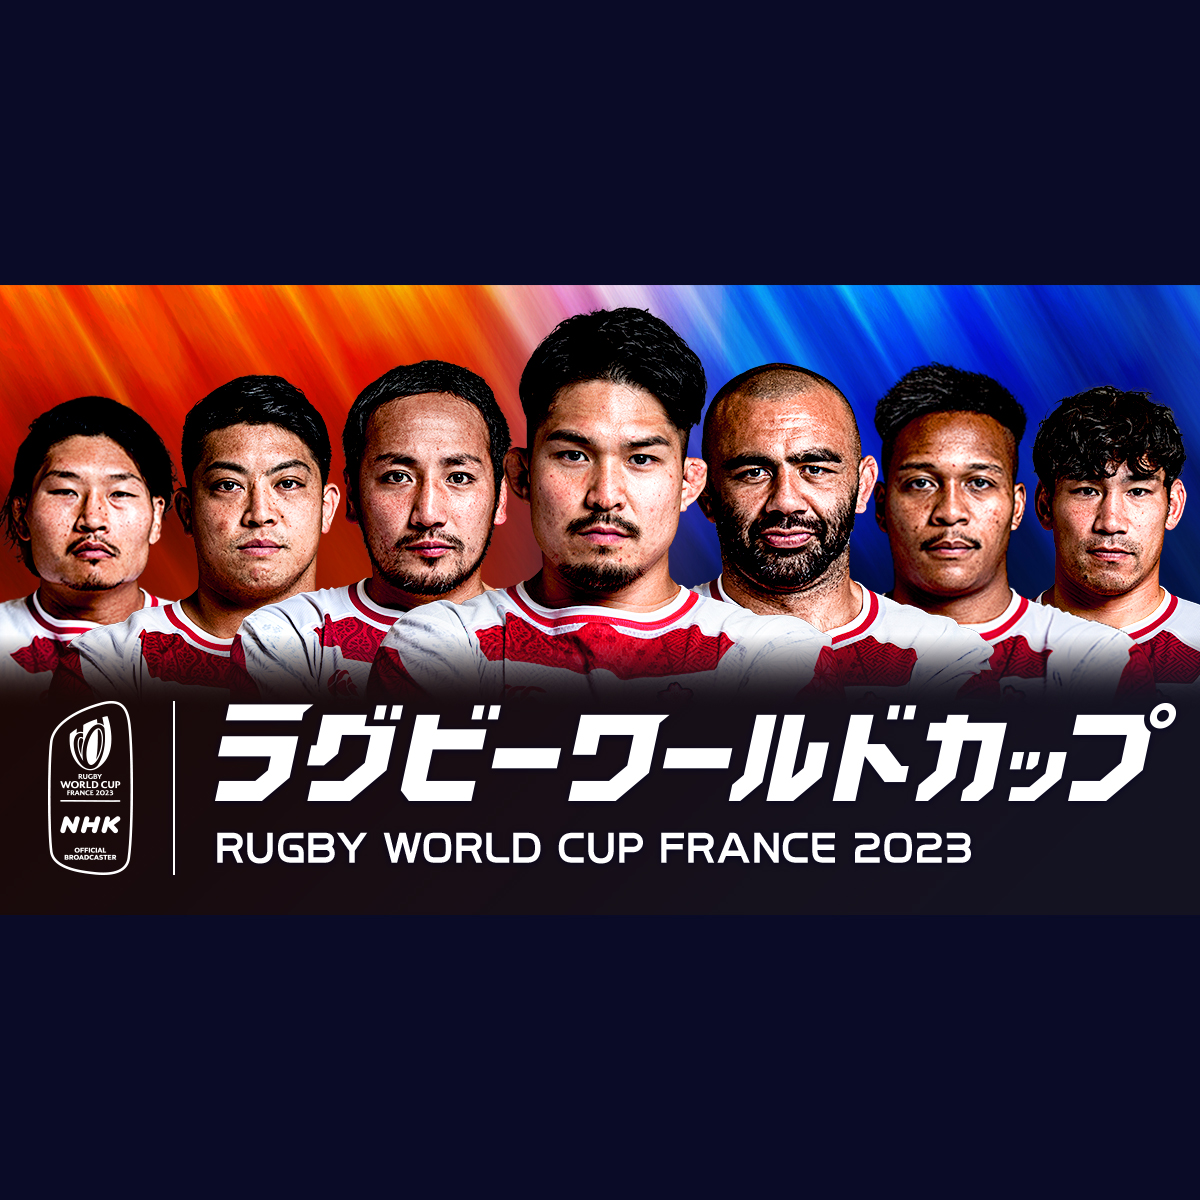 ラグビーワールドカップ 2023【NHK特設サイト】フランス大会